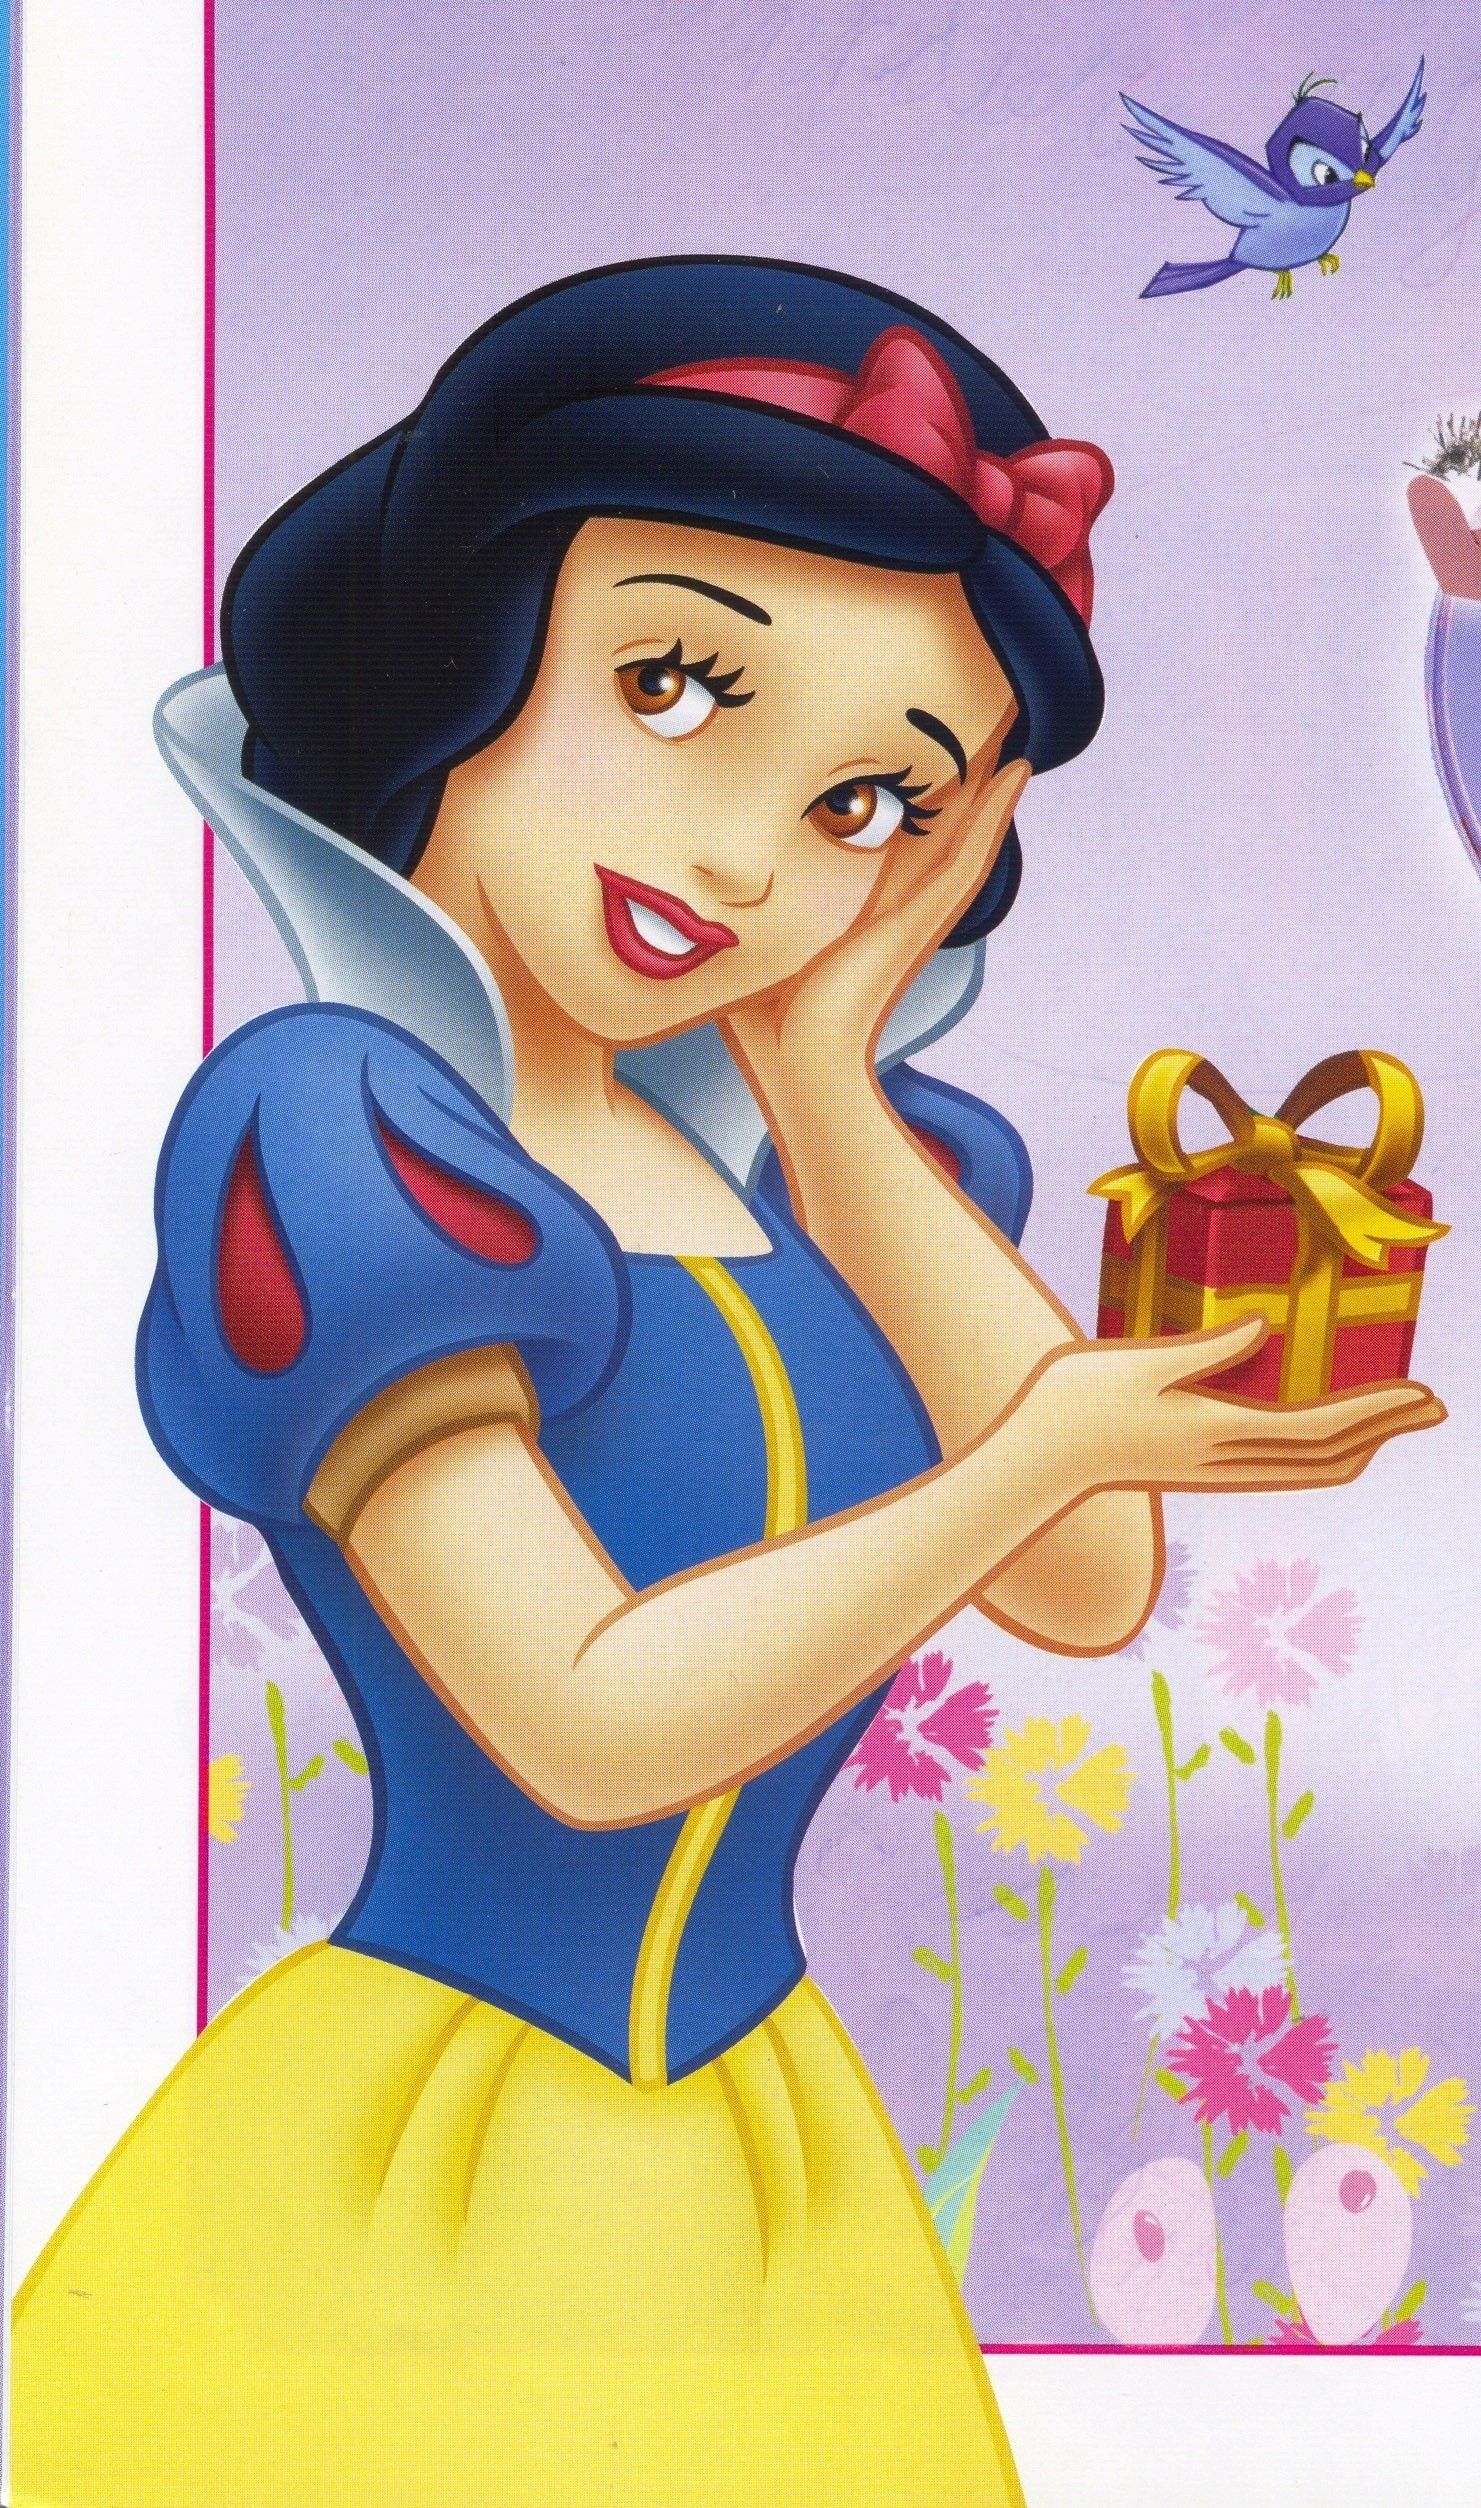 Disney Princess Snow White .wallpapertip.com